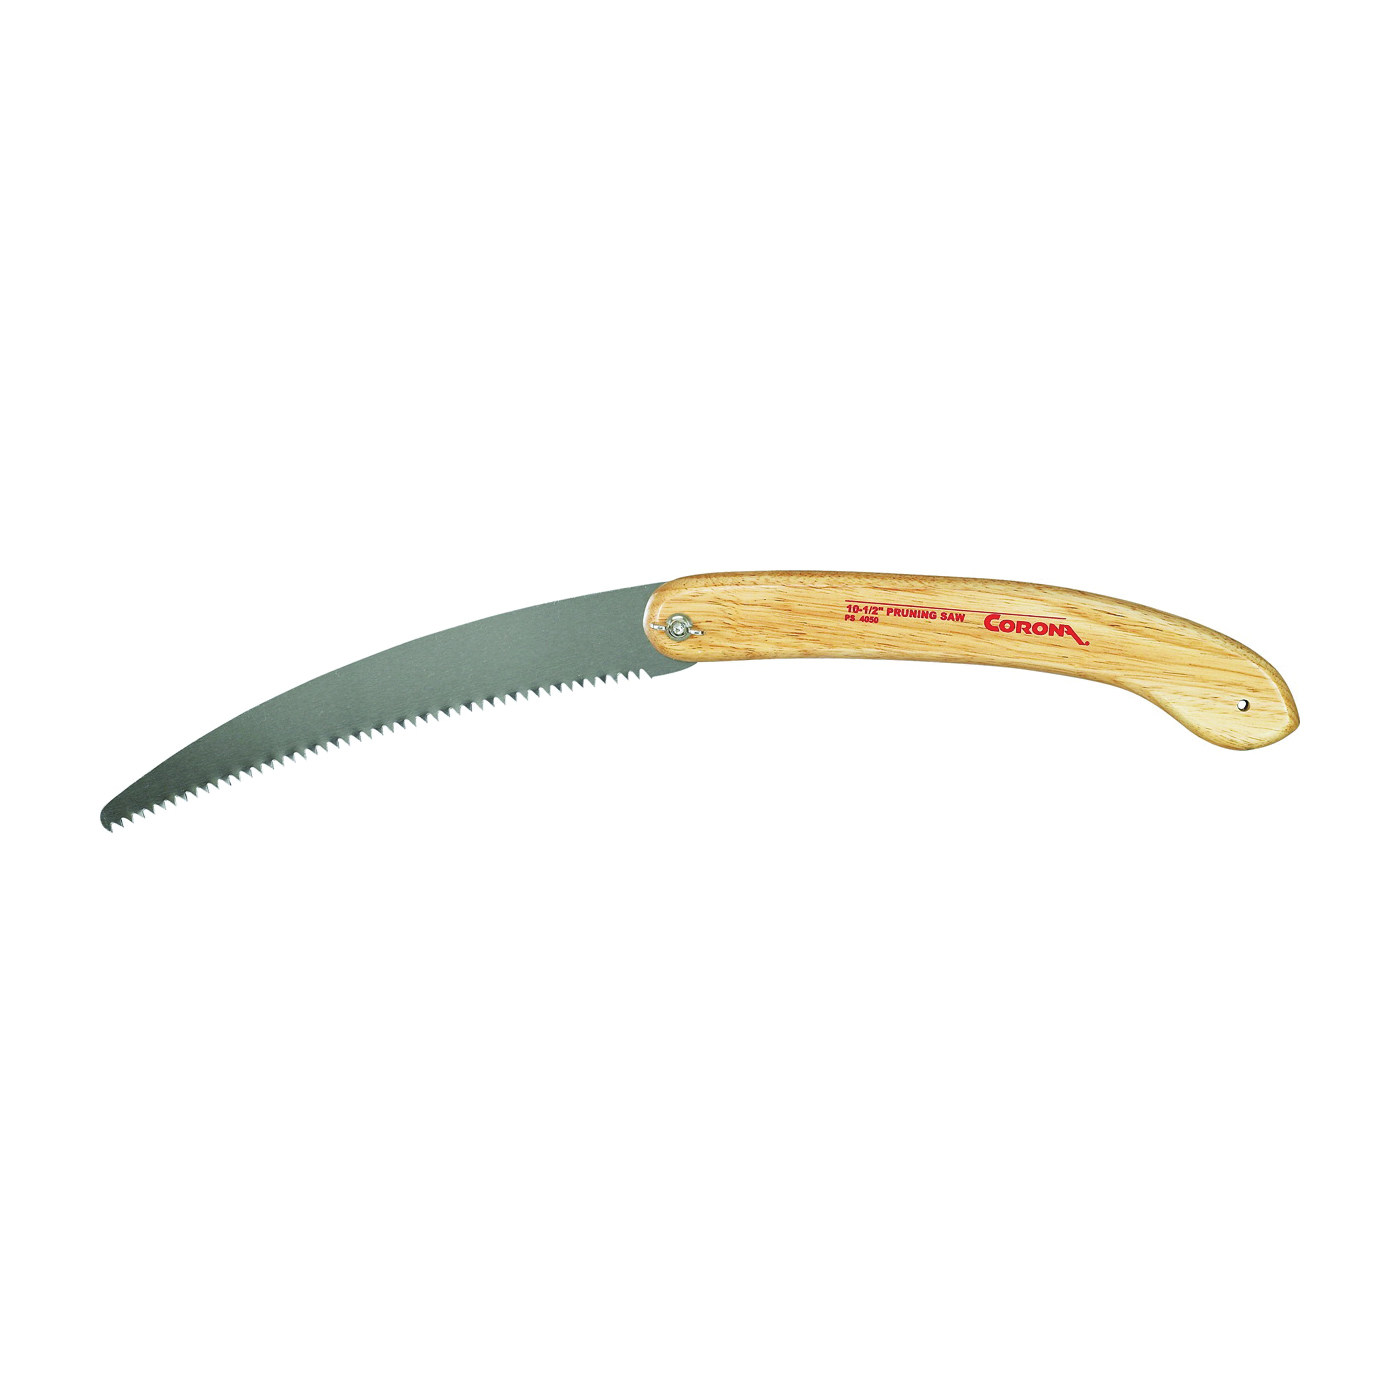 CORONA PS 4050 Pruning Saw, Steel Blade, 6 TPI, Hardwood Handle